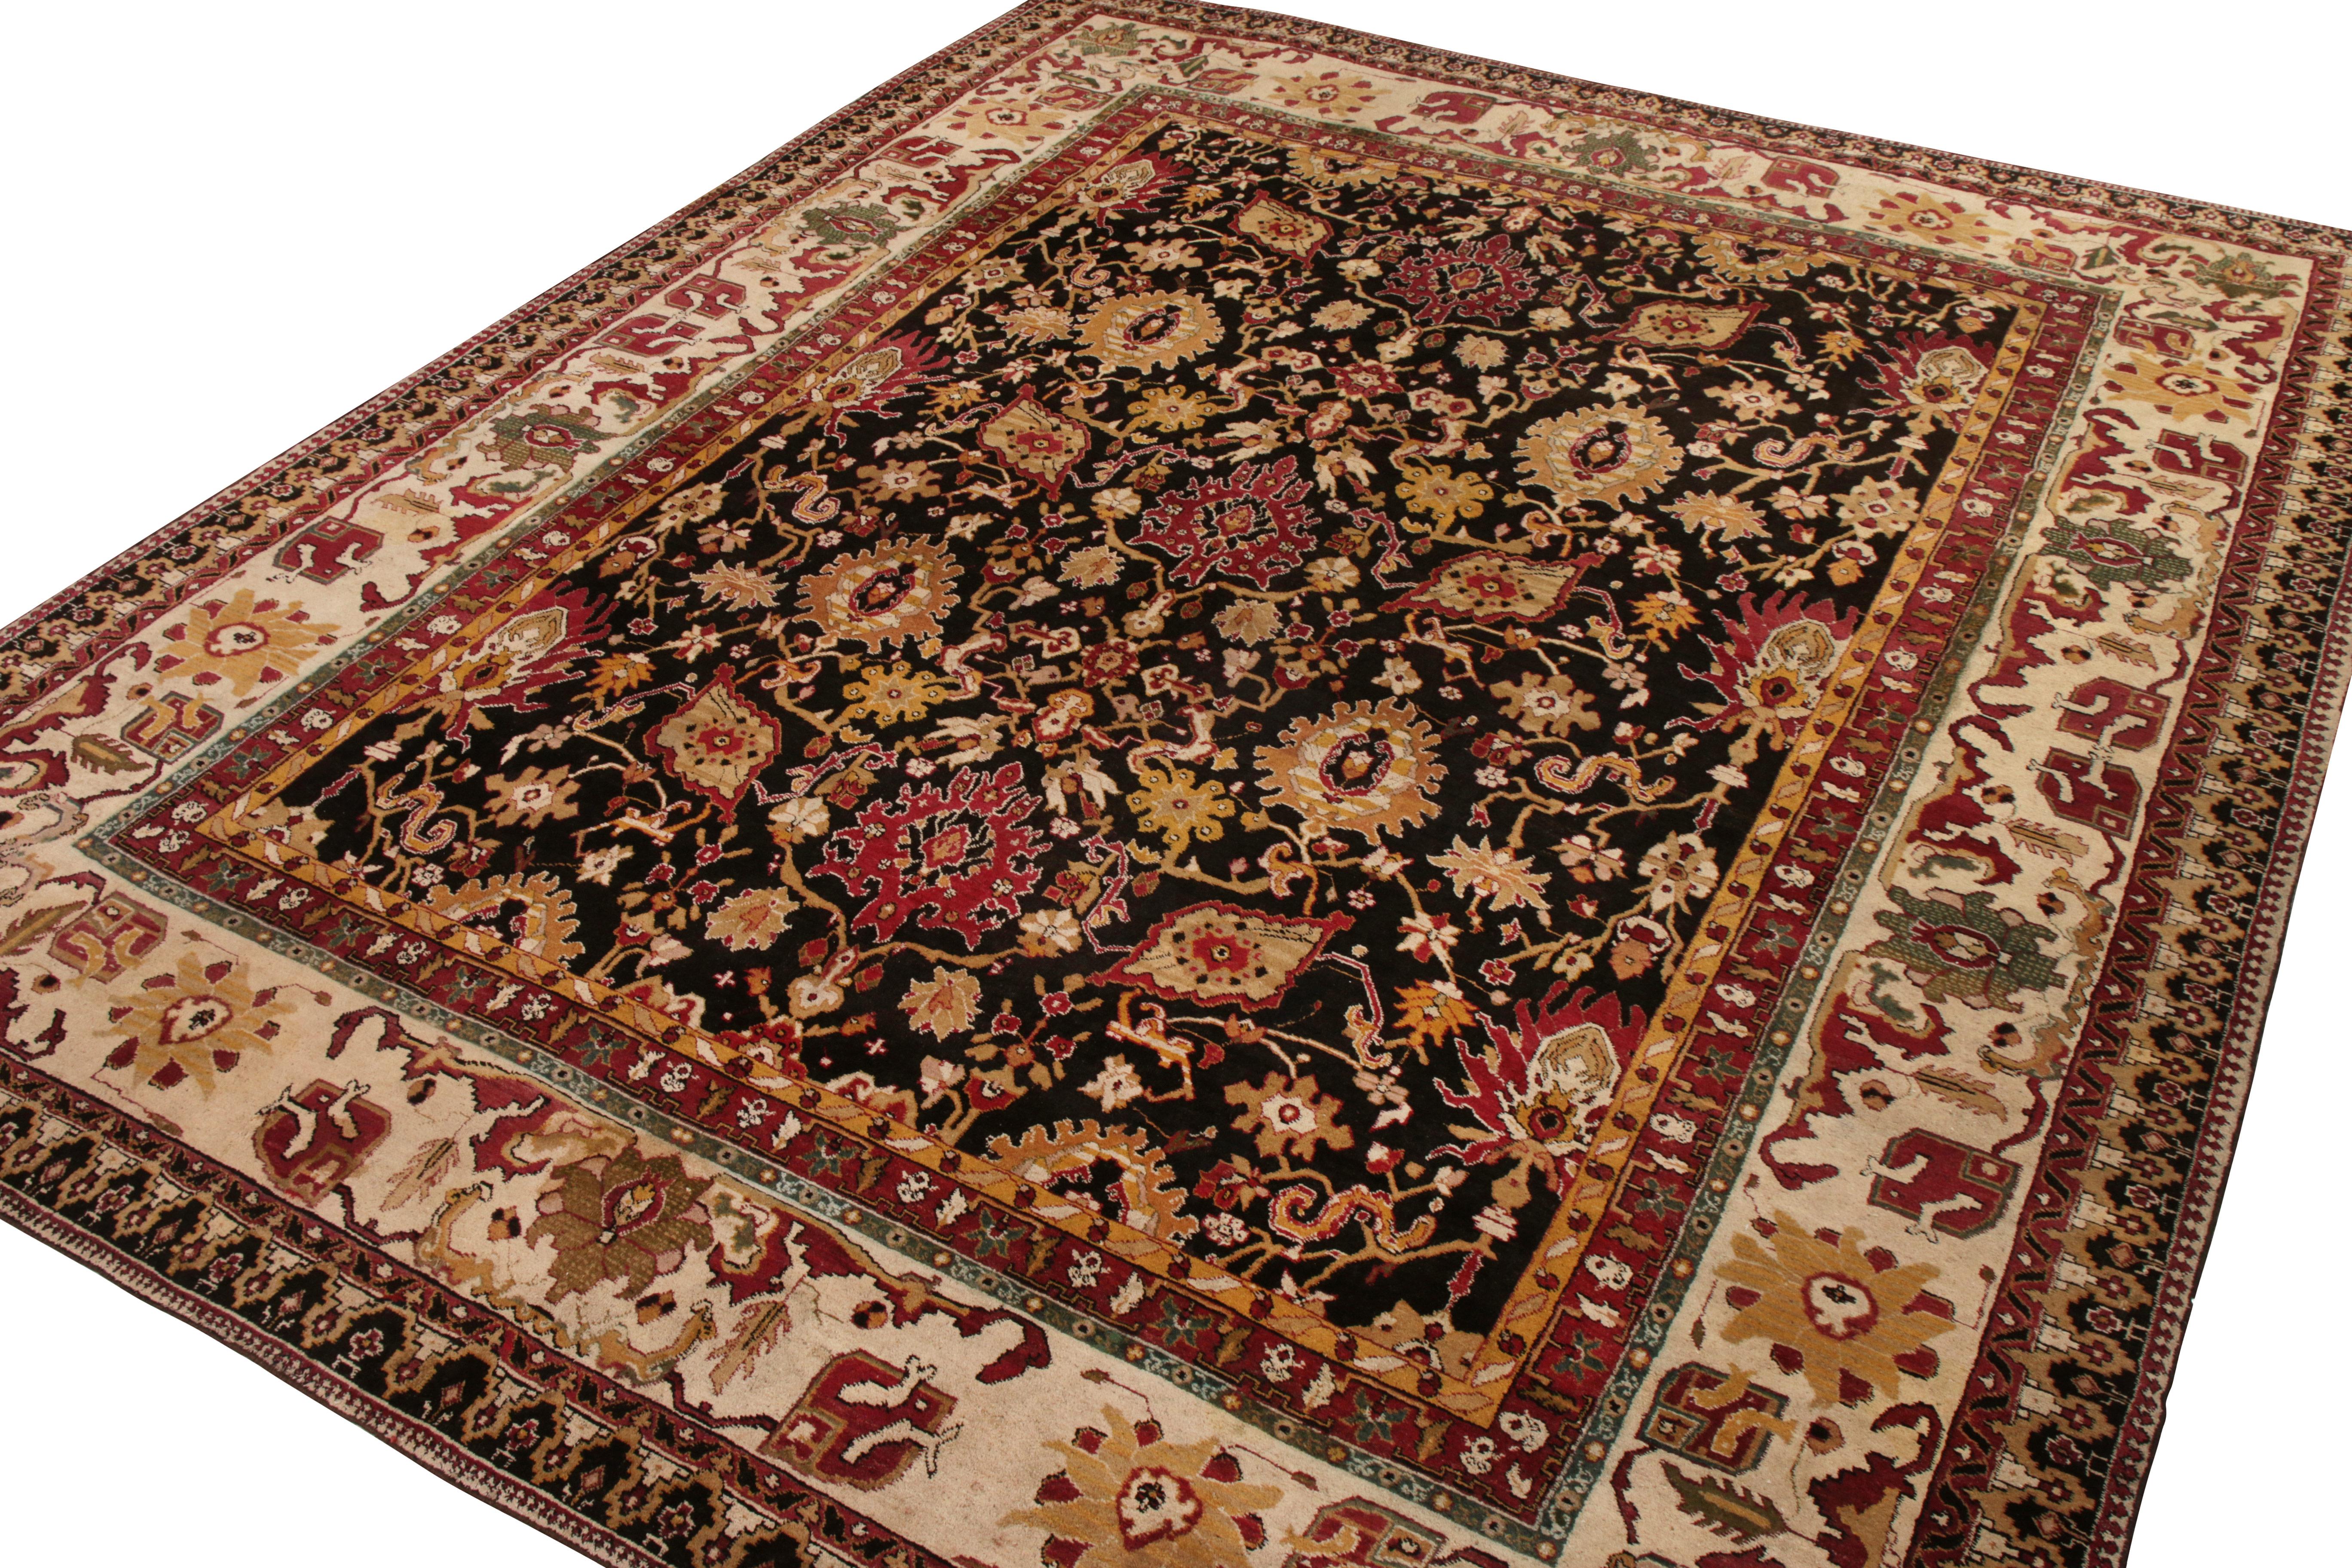 Dieser antike 12x15 Agra-Teppich ist ein seltenes, übergroßes Stück seiner Zeit - handgeknüpft aus Wolle um 1920-1930.

Über das Design:

Dieses Stück besticht durch ein florales Muster in warmem Rot, Gold und Beige-Braun auf einem fast schwarzen